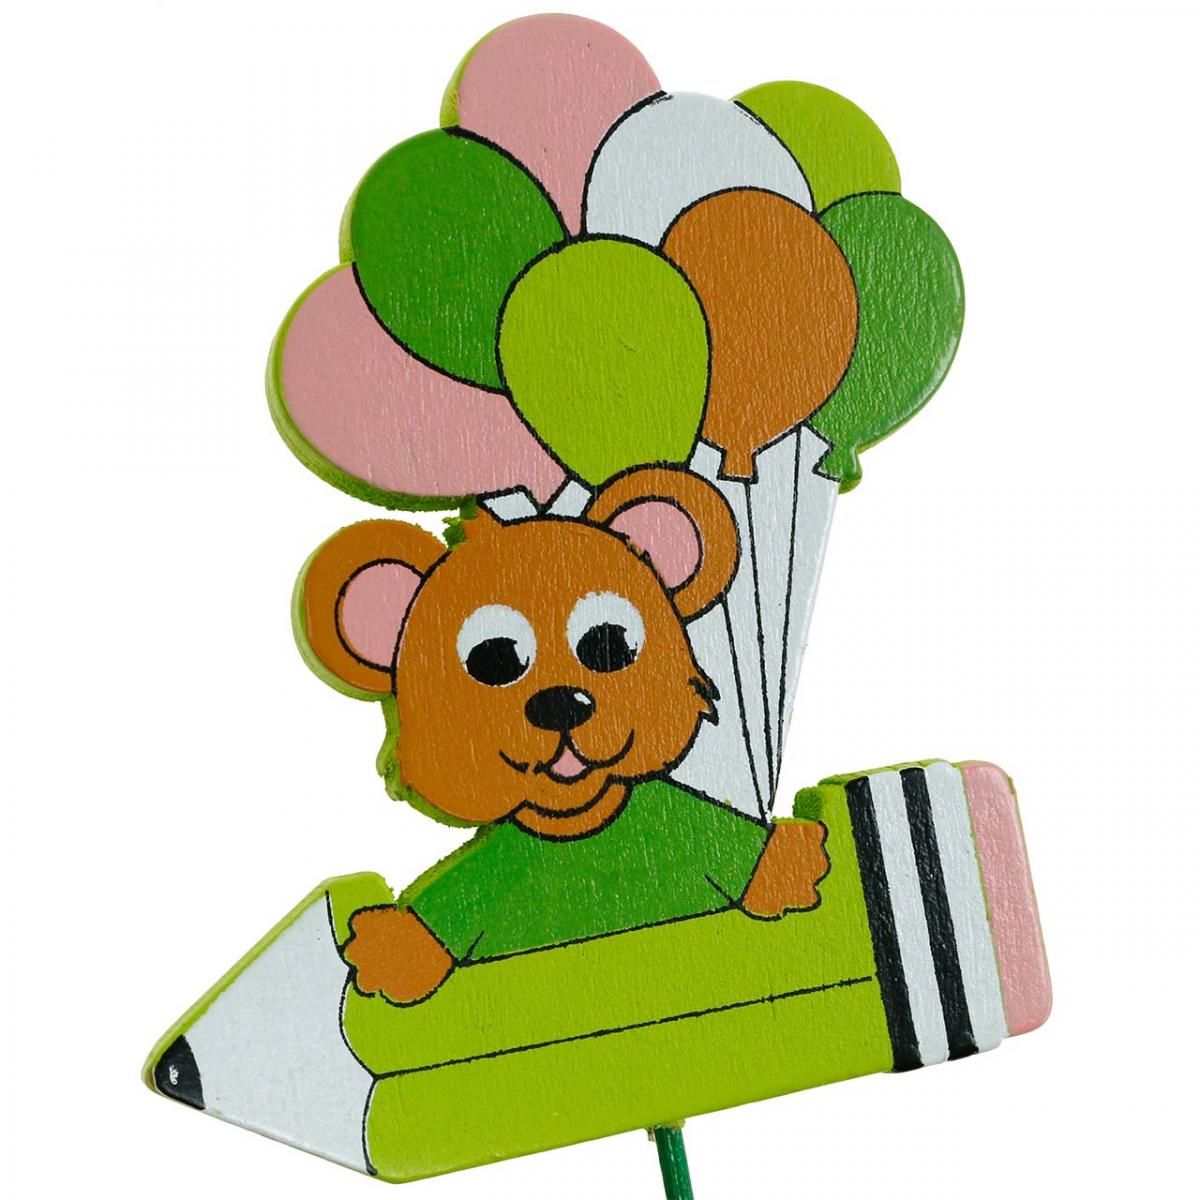 Dekostecker Stift mit Teddy und Ballons Blumenstecker Sommerdeko Kinder 16St